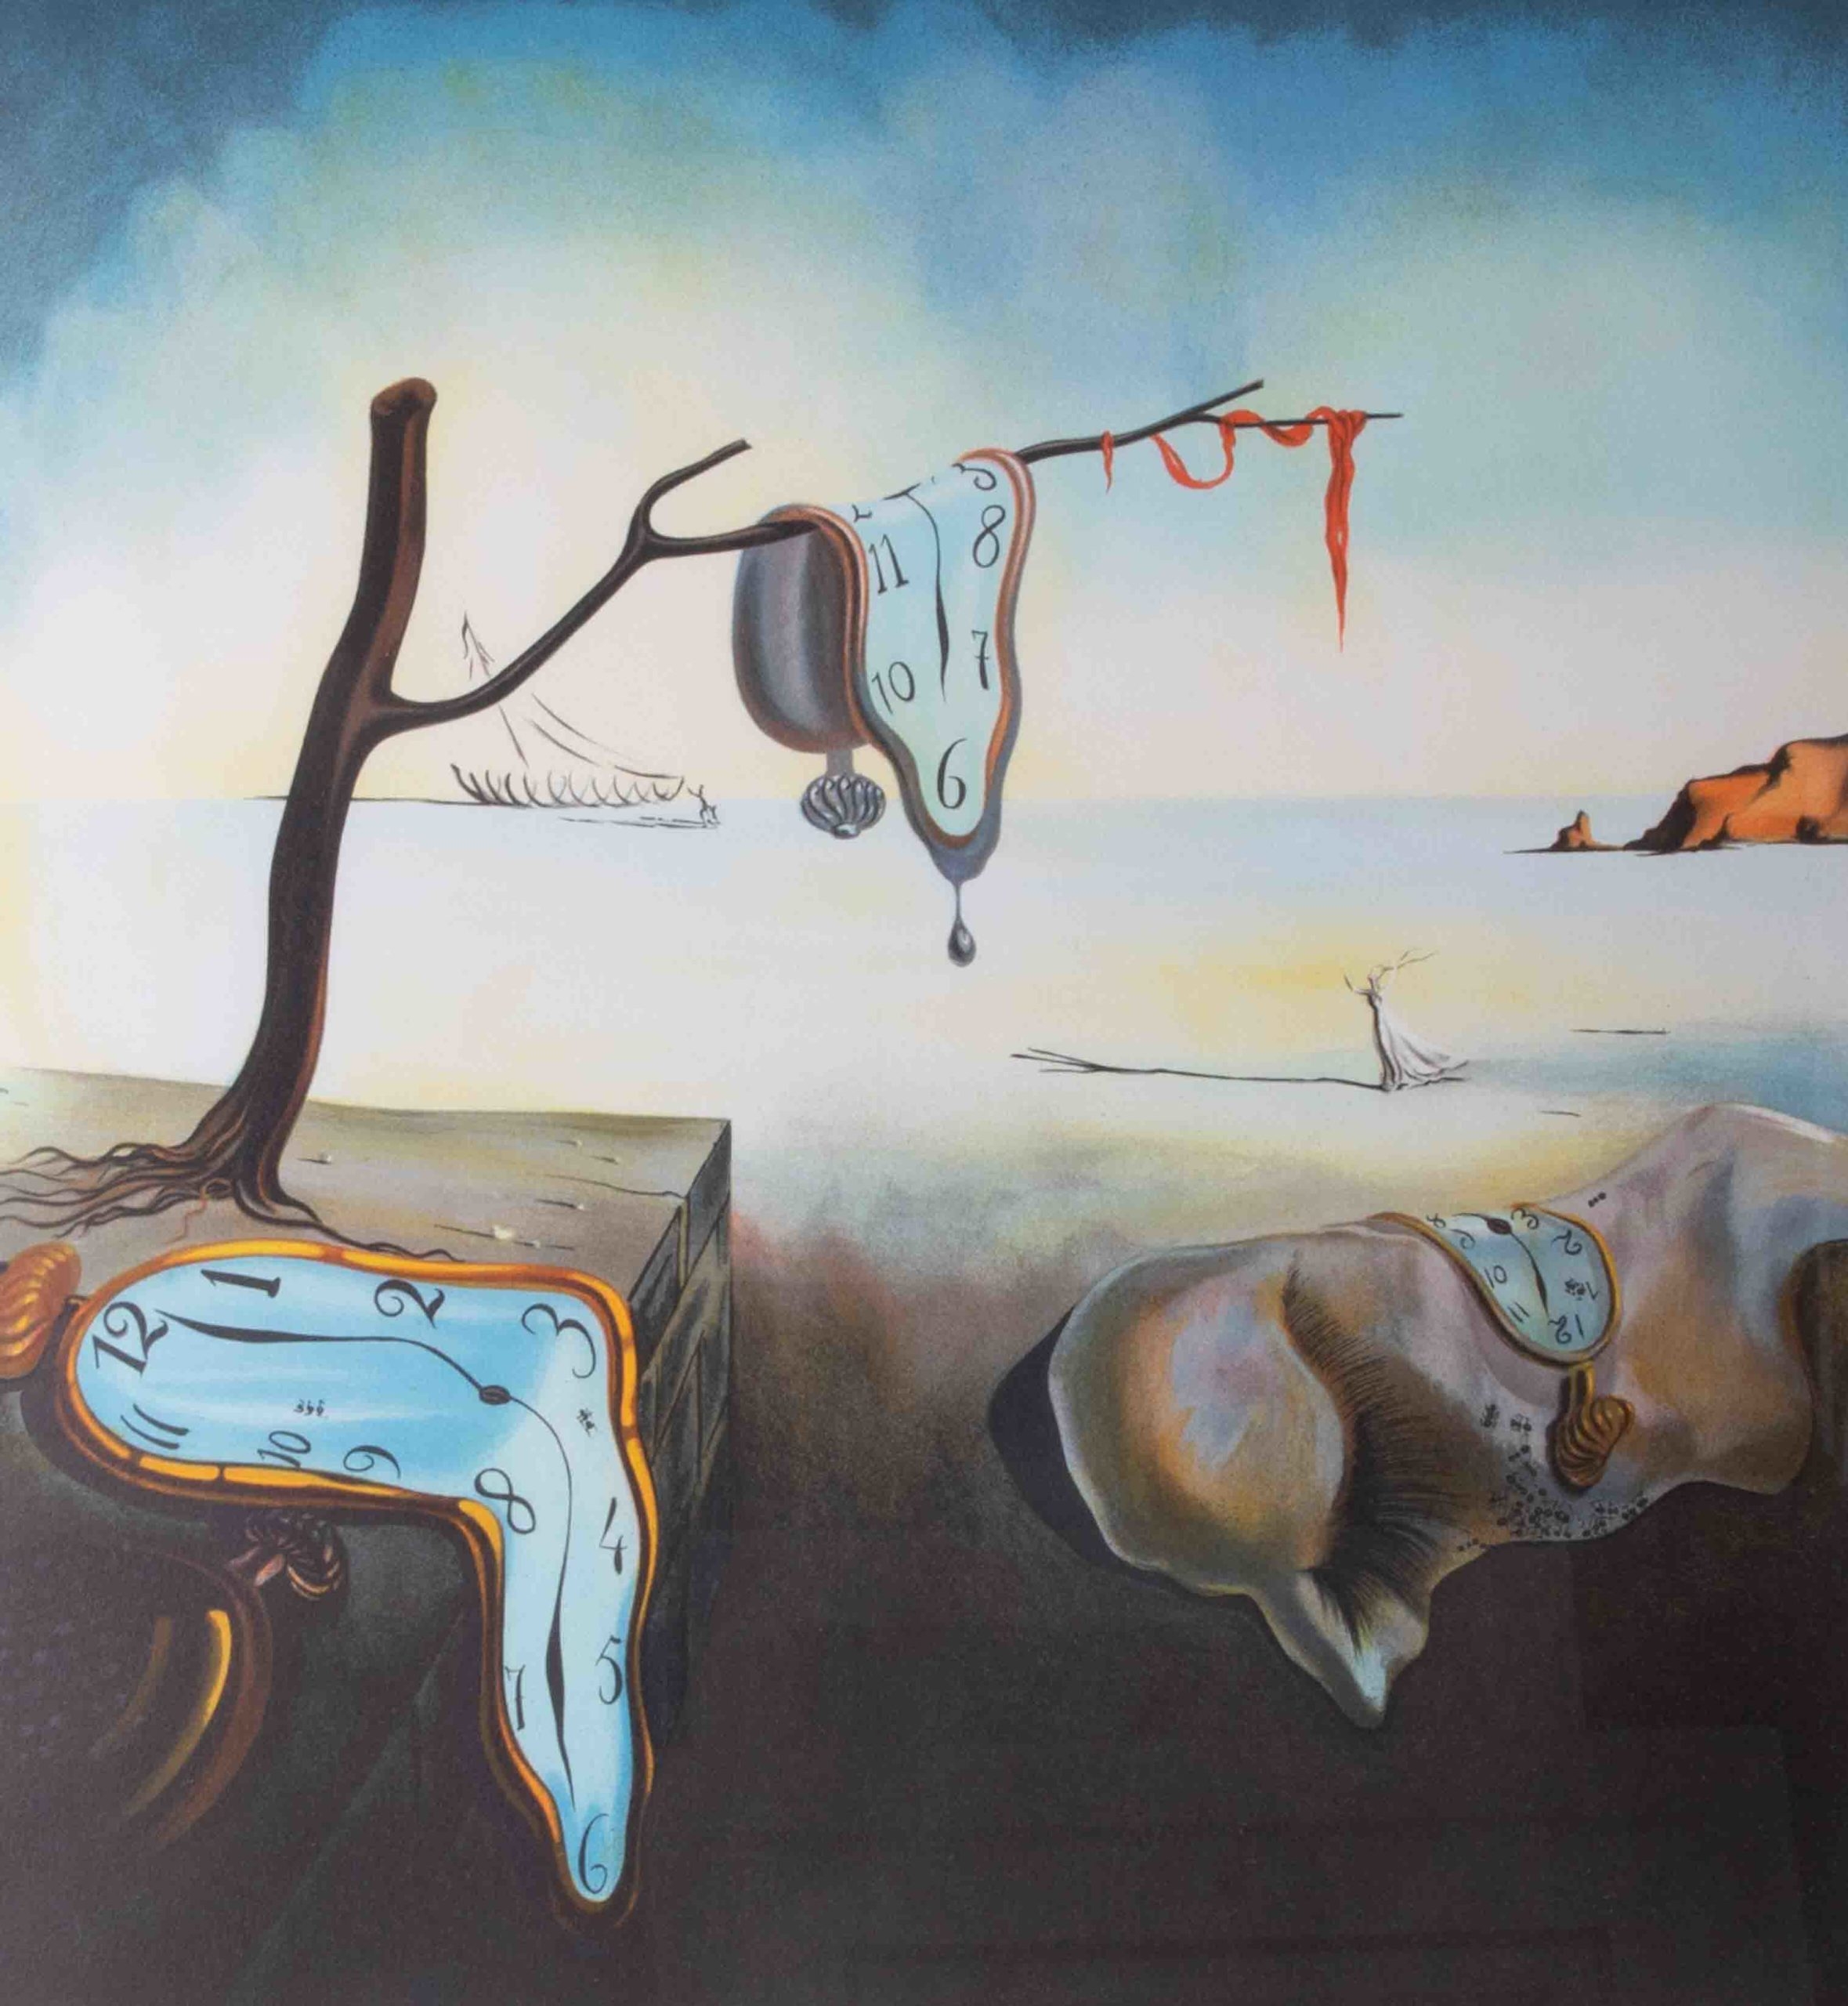 Artwork by Salvador Dalí, Melting Clock